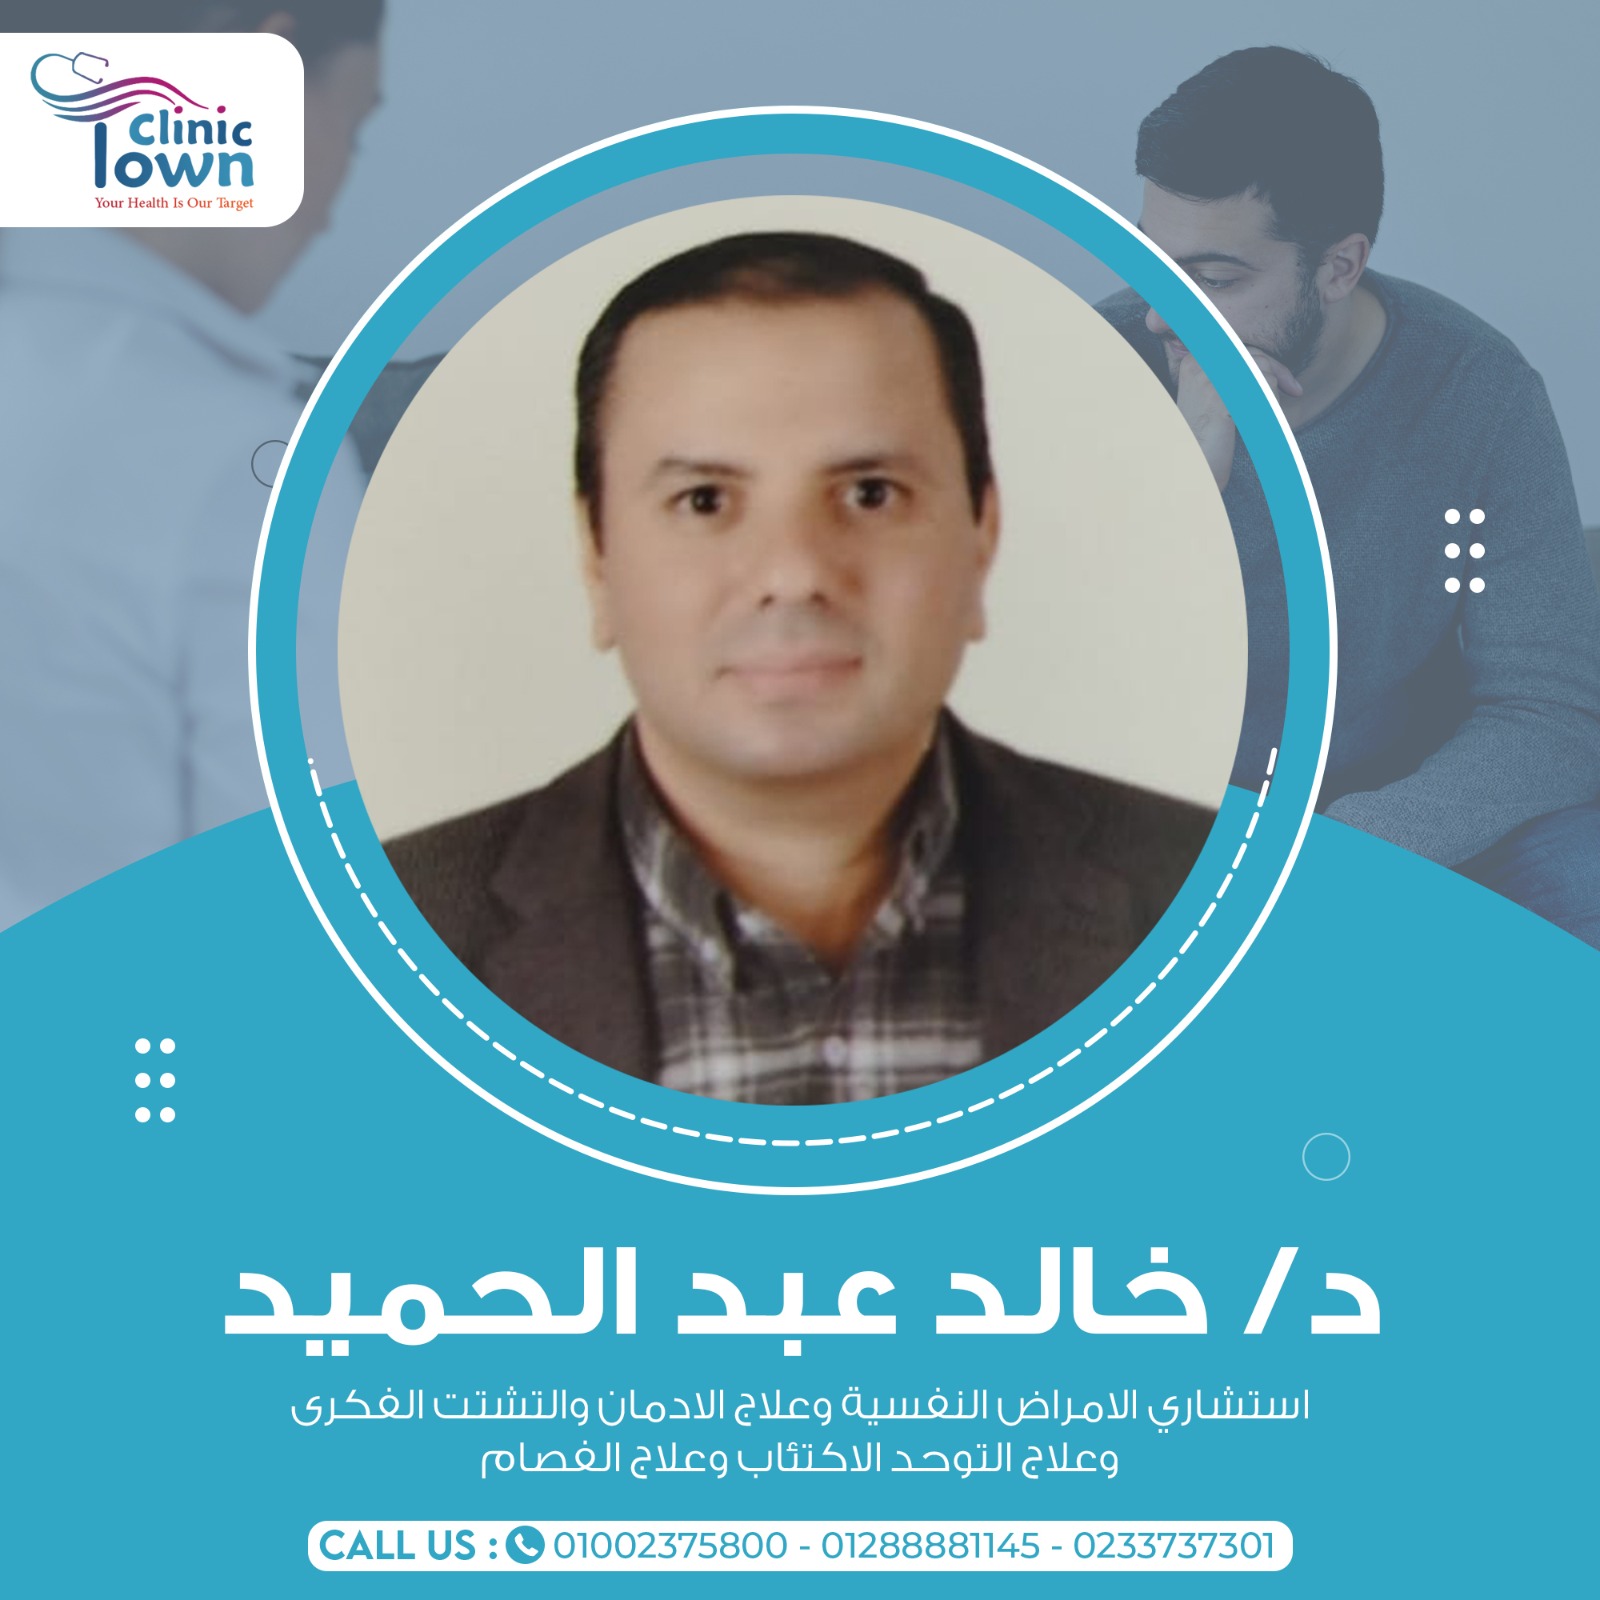 Dr. Khaled Mohamed Abdel Hameed